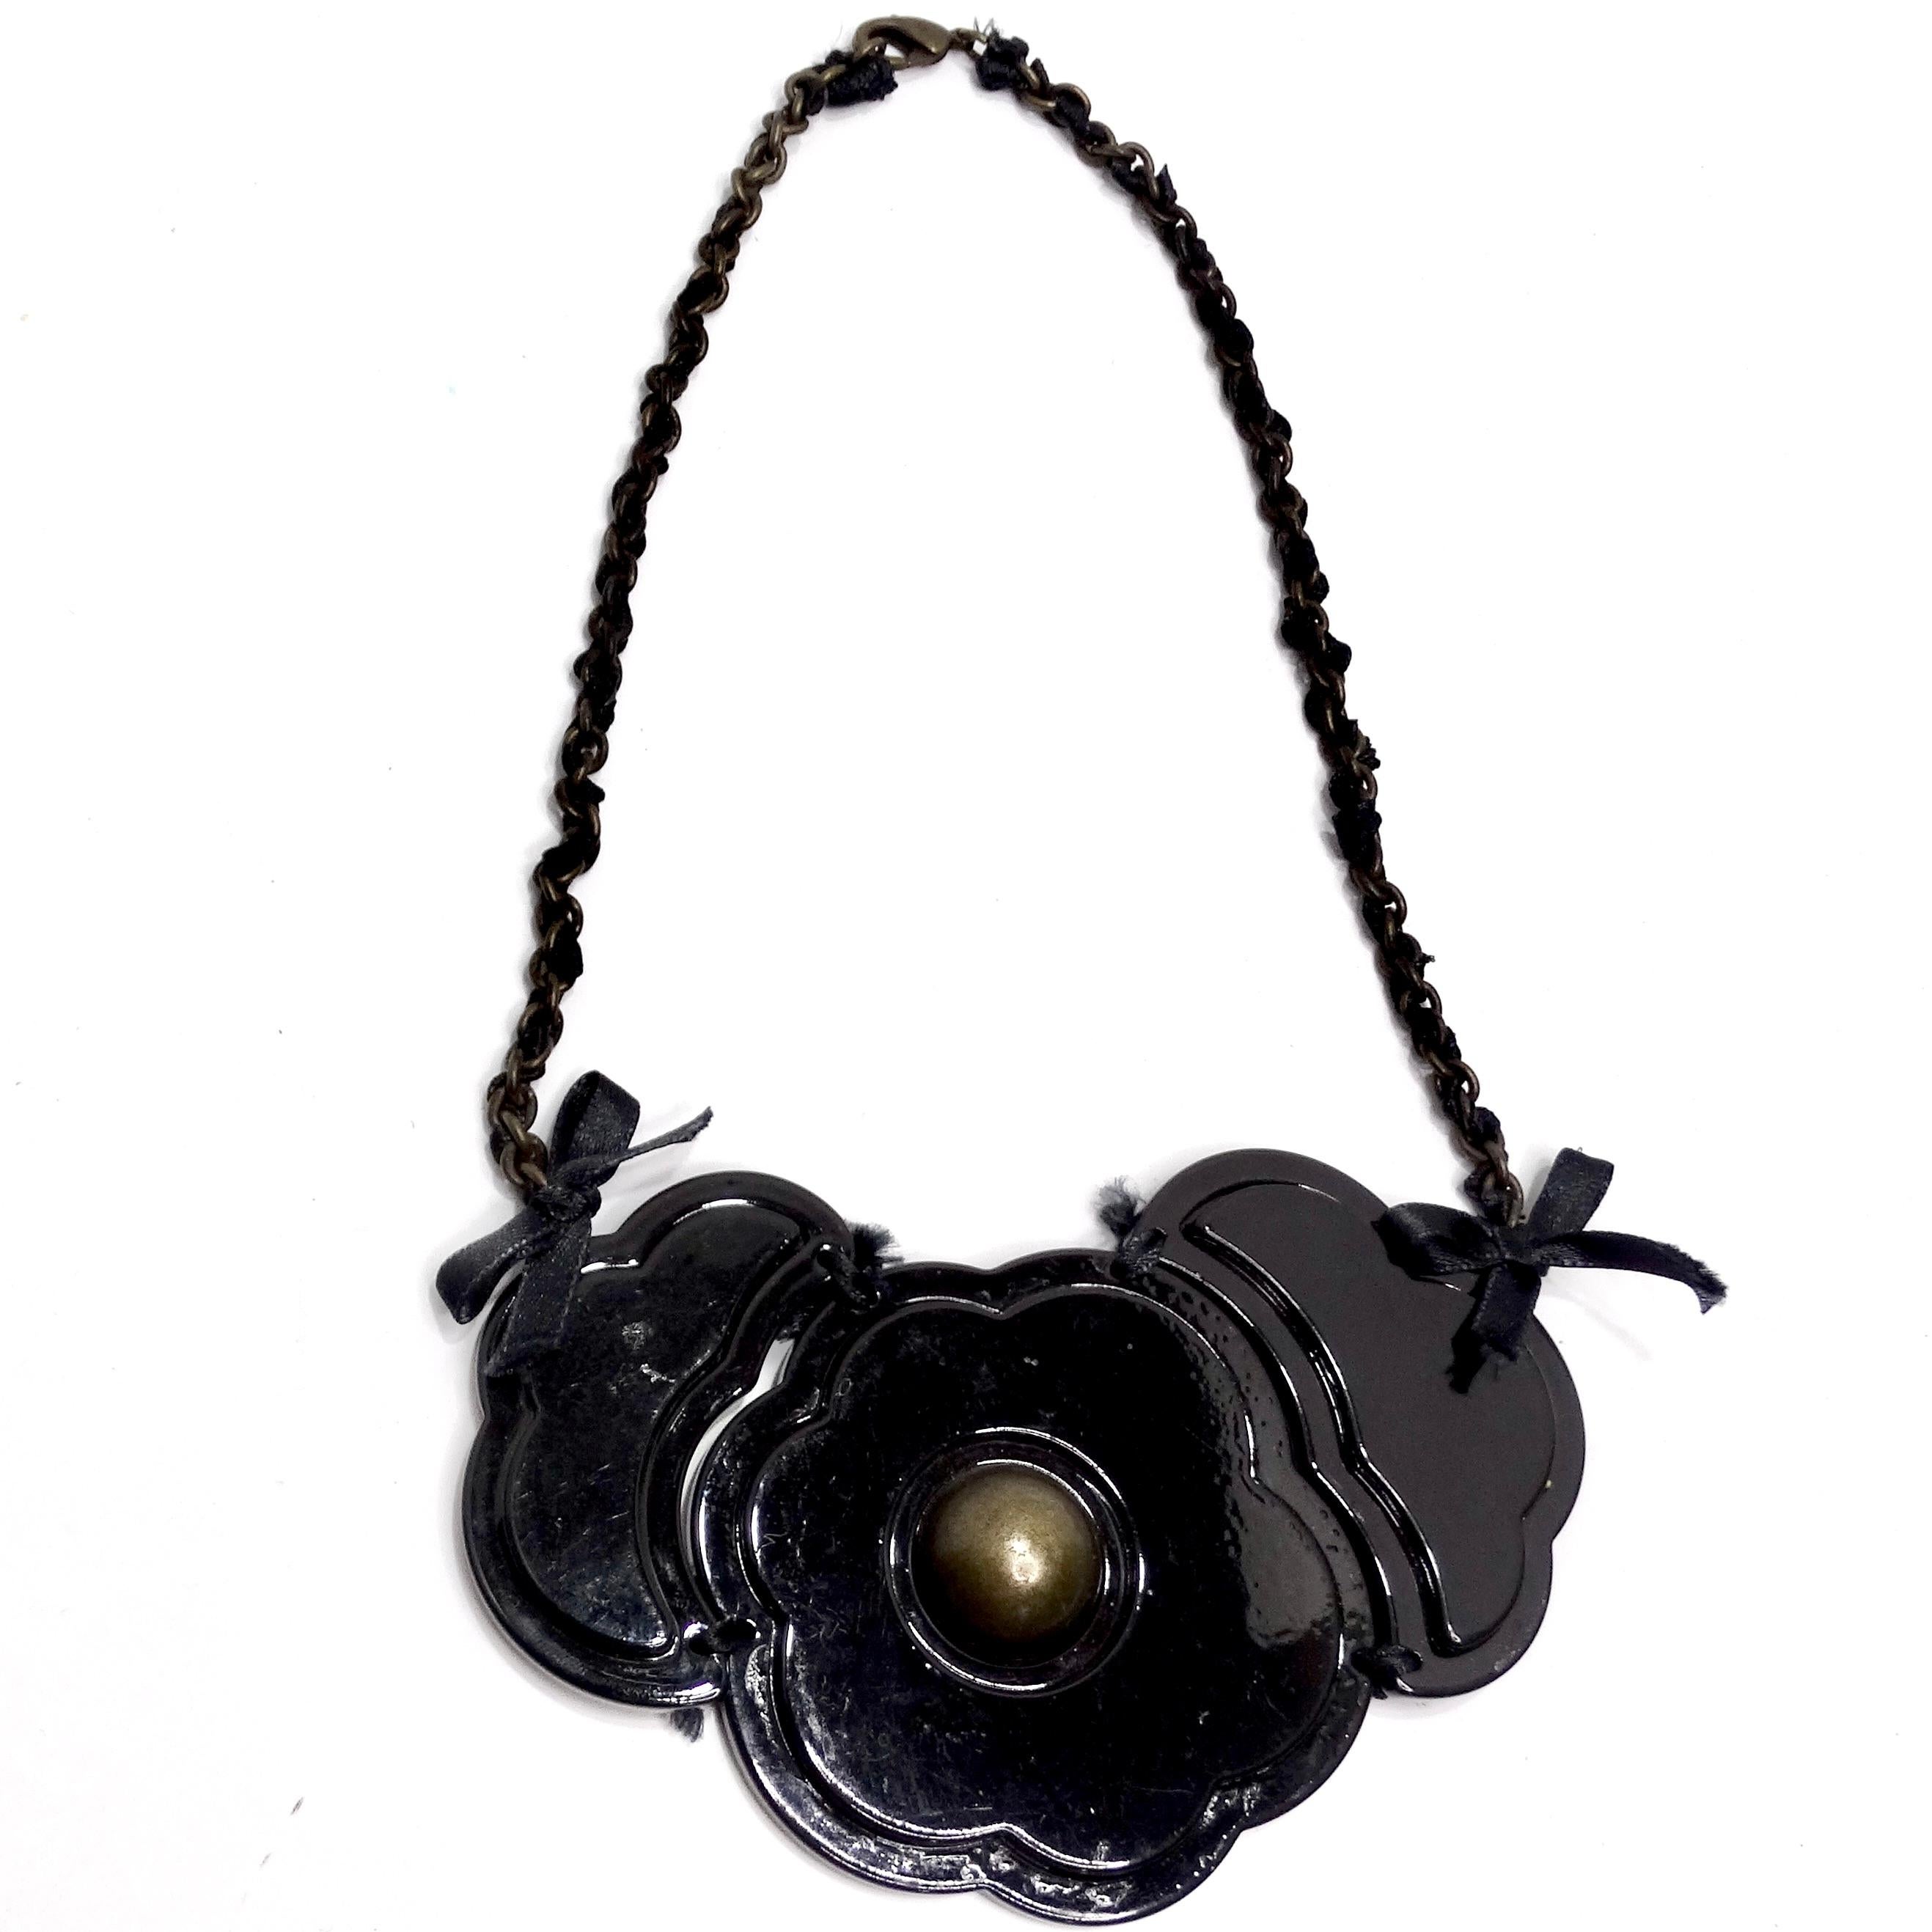 Te presentamos el Collar Flor Negra Moschino 1990: un encantador recuerdo del pasado que añade un toque de diversión y estilo a tu estilismo. Los años 90 fueron una época de moda atrevida y caprichosa, y este collar capta perfectamente ese espíritu.